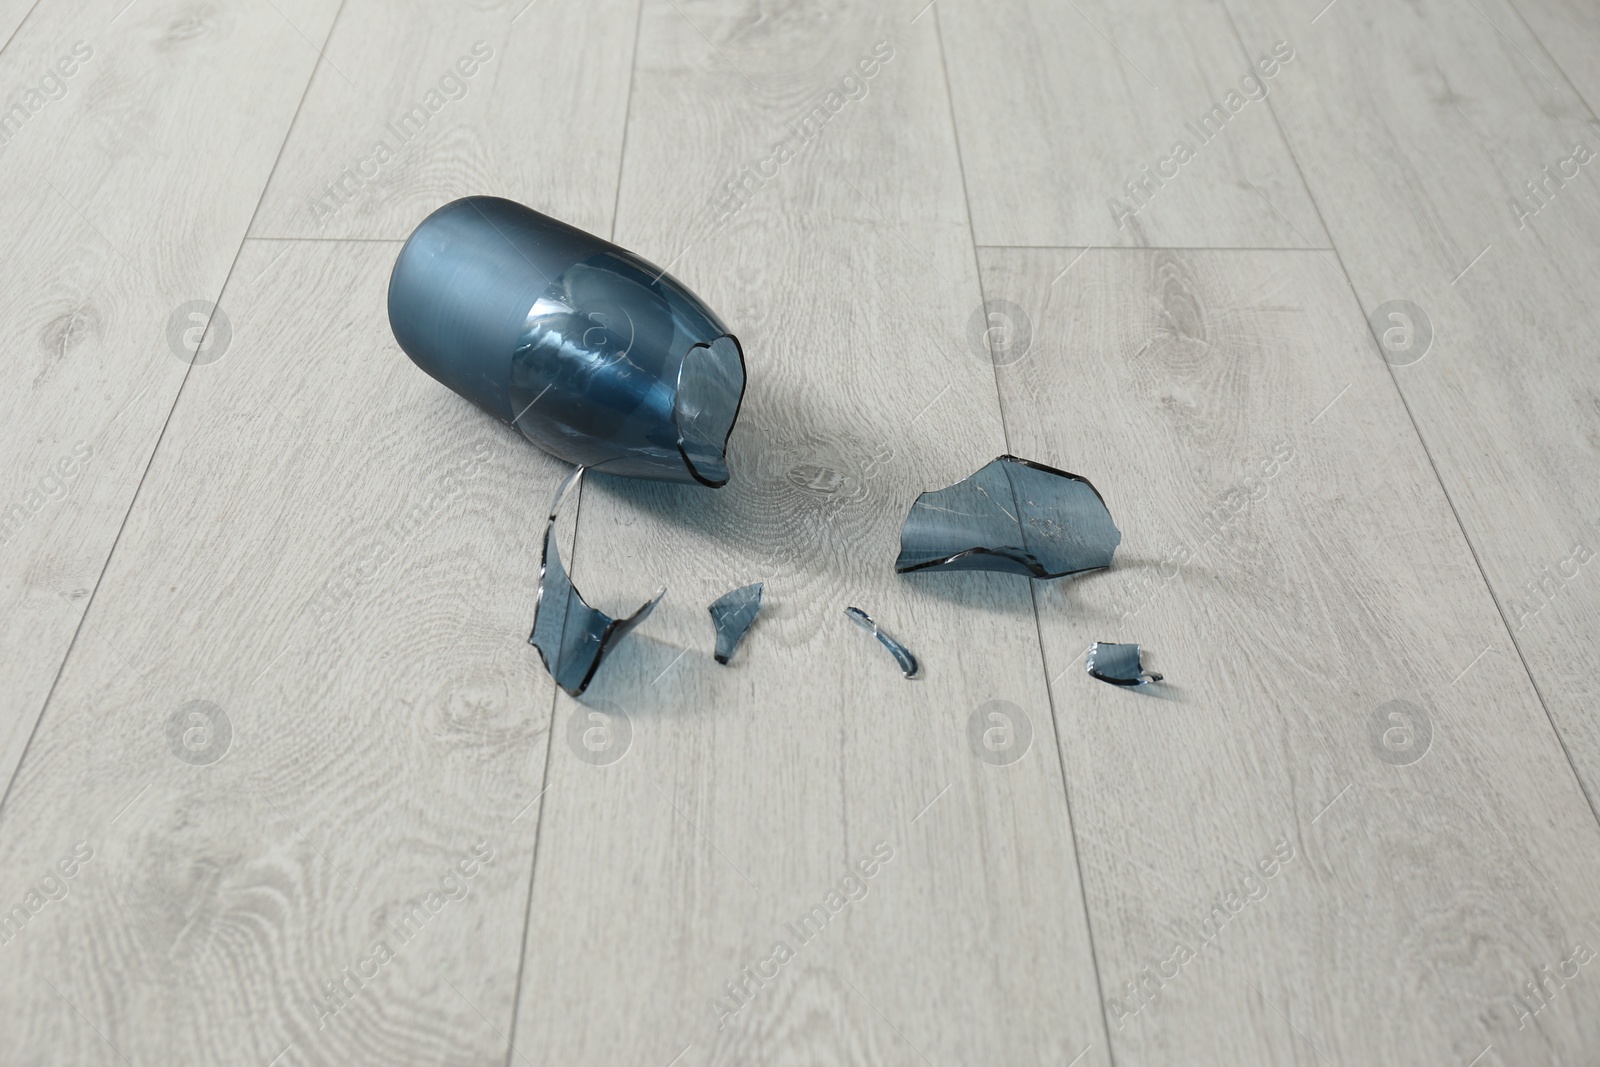 Photo of Broken blue glass vase on wooden floor